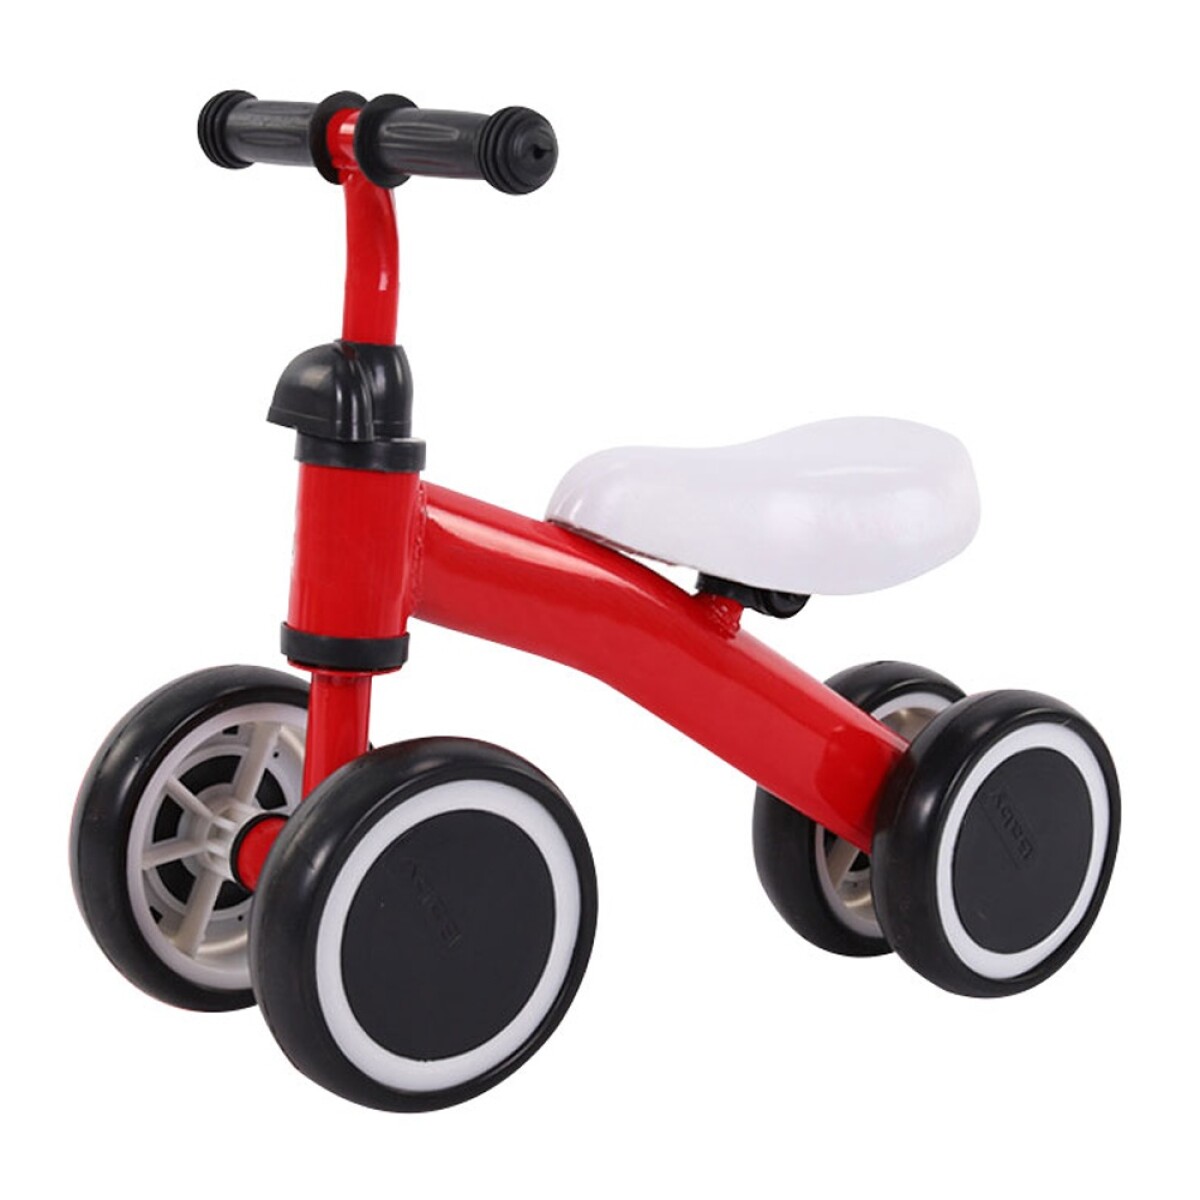 Buggy Bicicleta s/ Pedales Cuatriciclo Aprendizaje p/ Niños - Rojo 